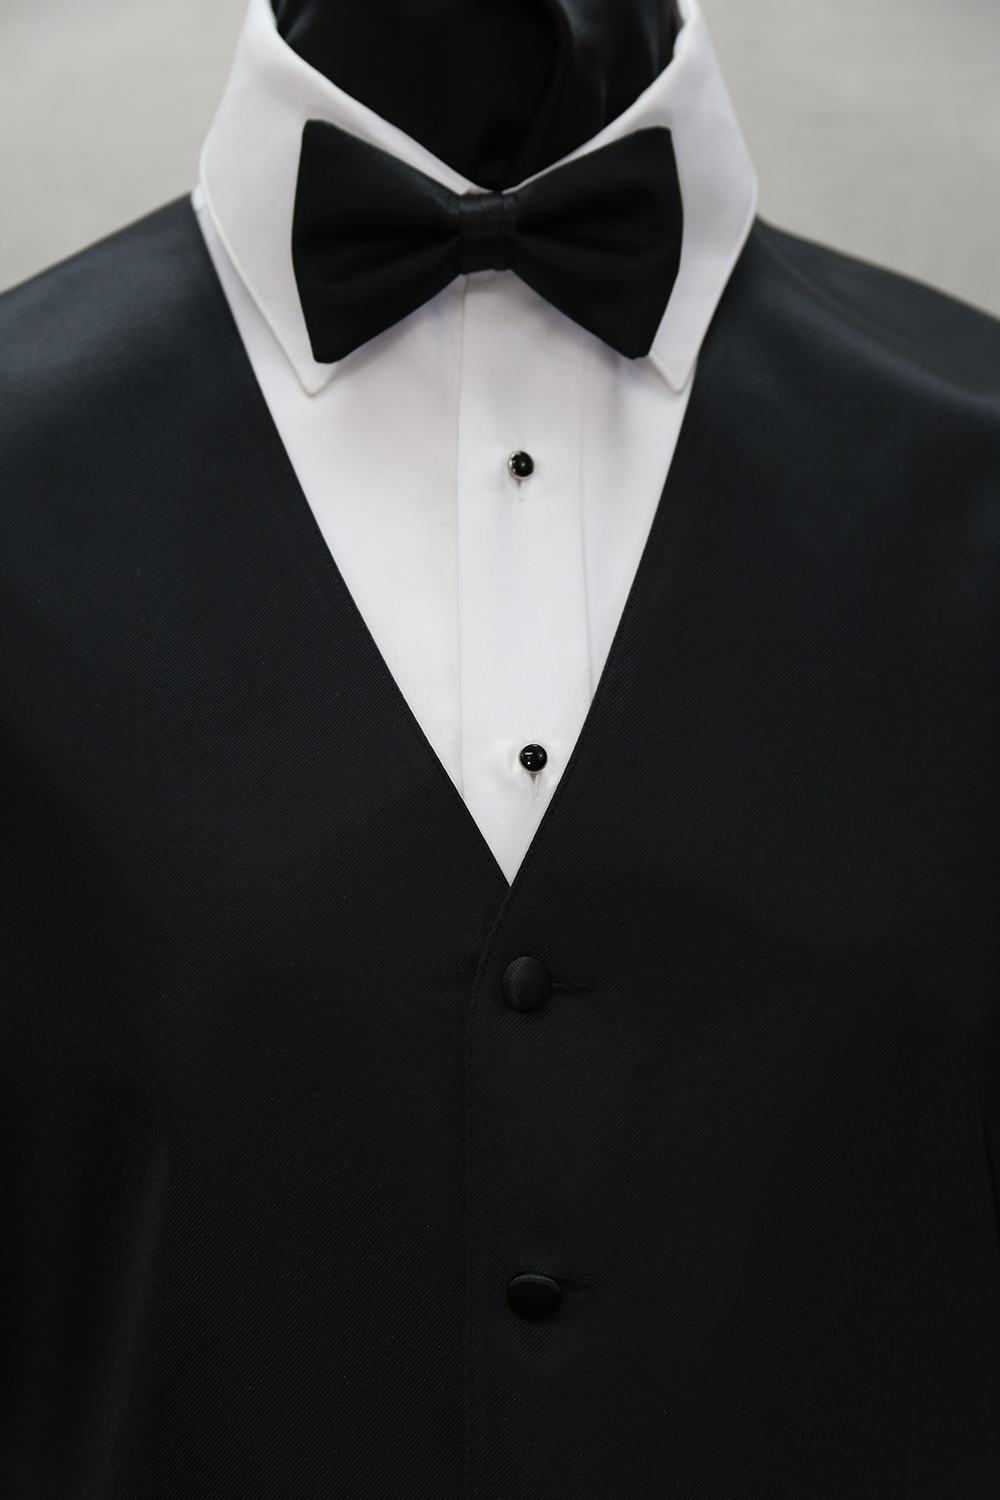 Black Vests & Ties | Men's Tuxedo Rentals & Suits | Mr Formal AZ